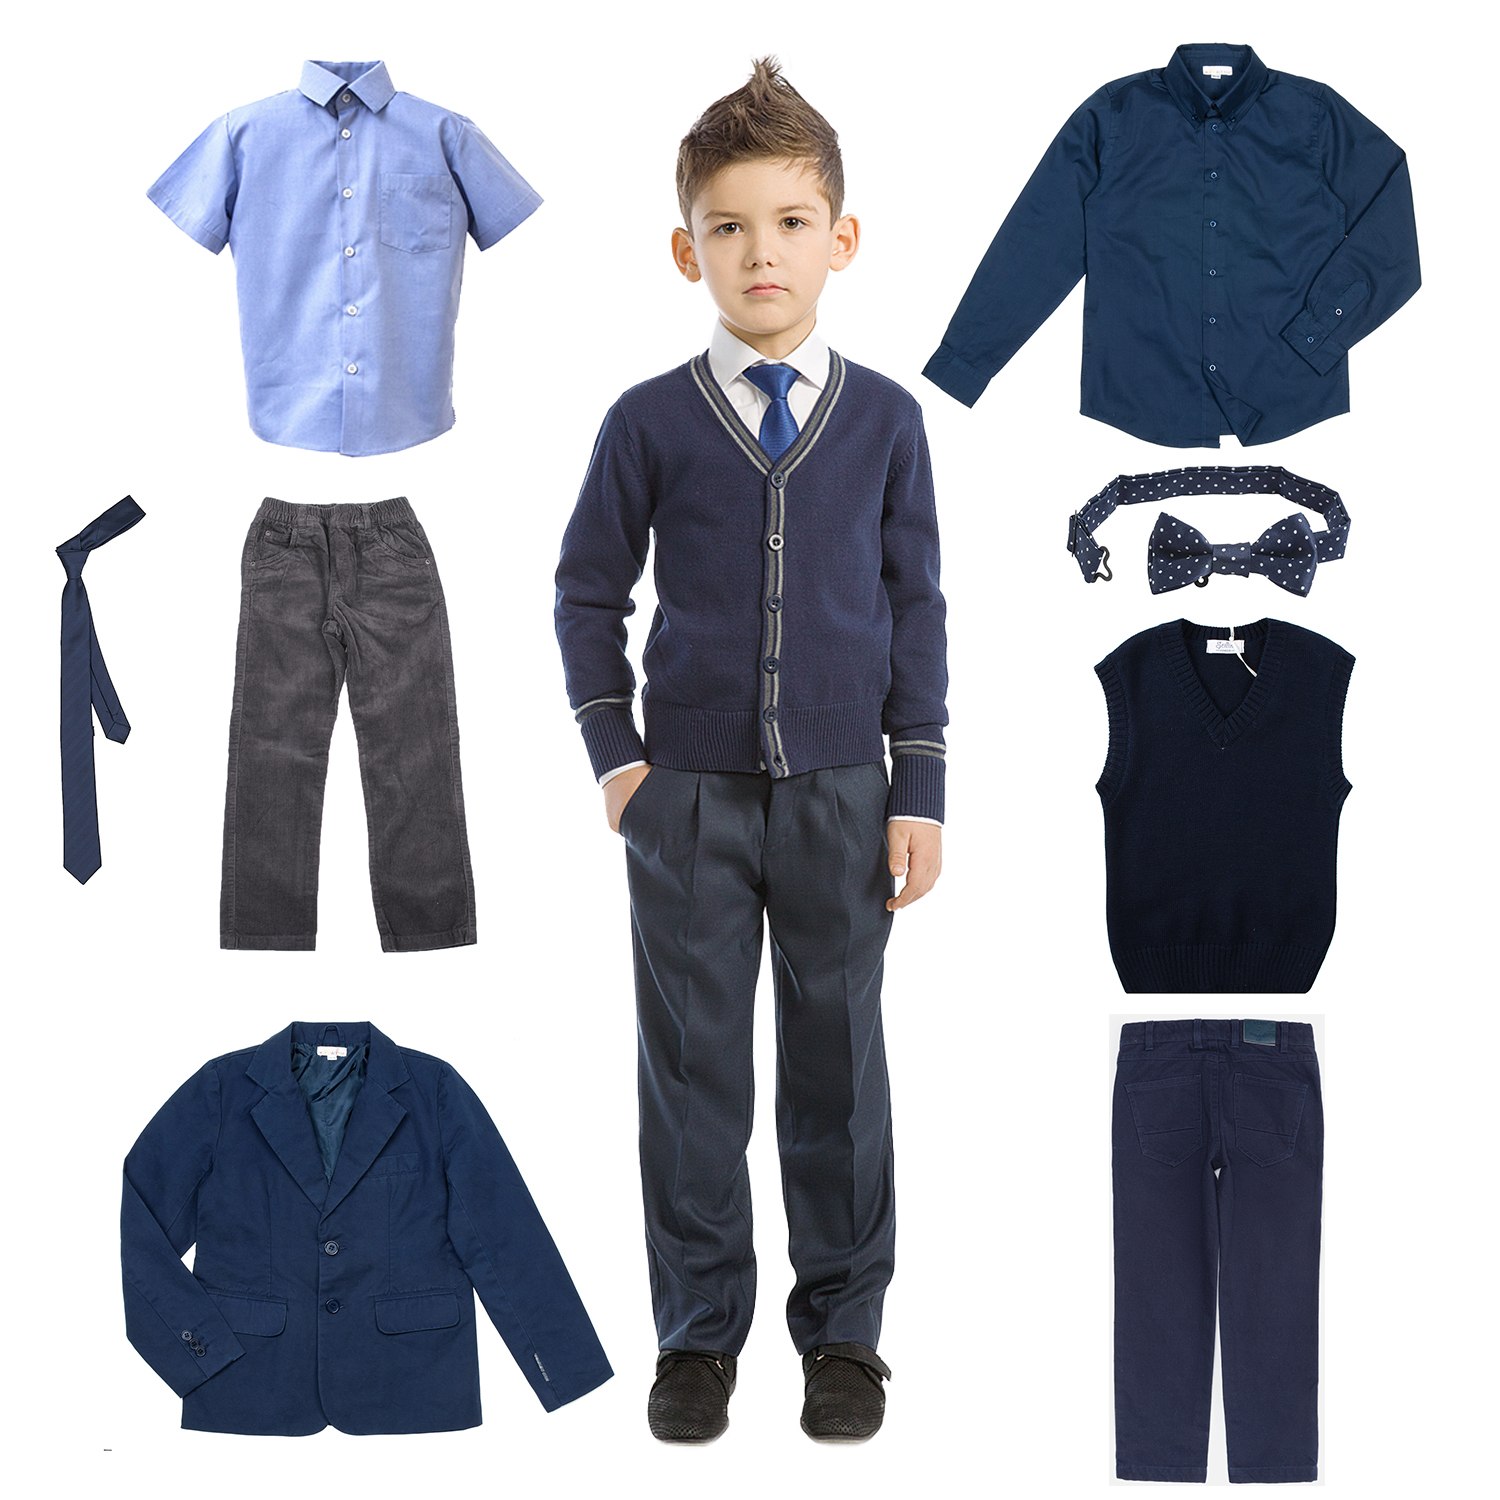 Мальчик в первый класс образ. Одежда для школы для мальчиков. Одежда для школьников мальчиков. Комплект школьной формы для мальчиков. Одежда школьника мальчика.